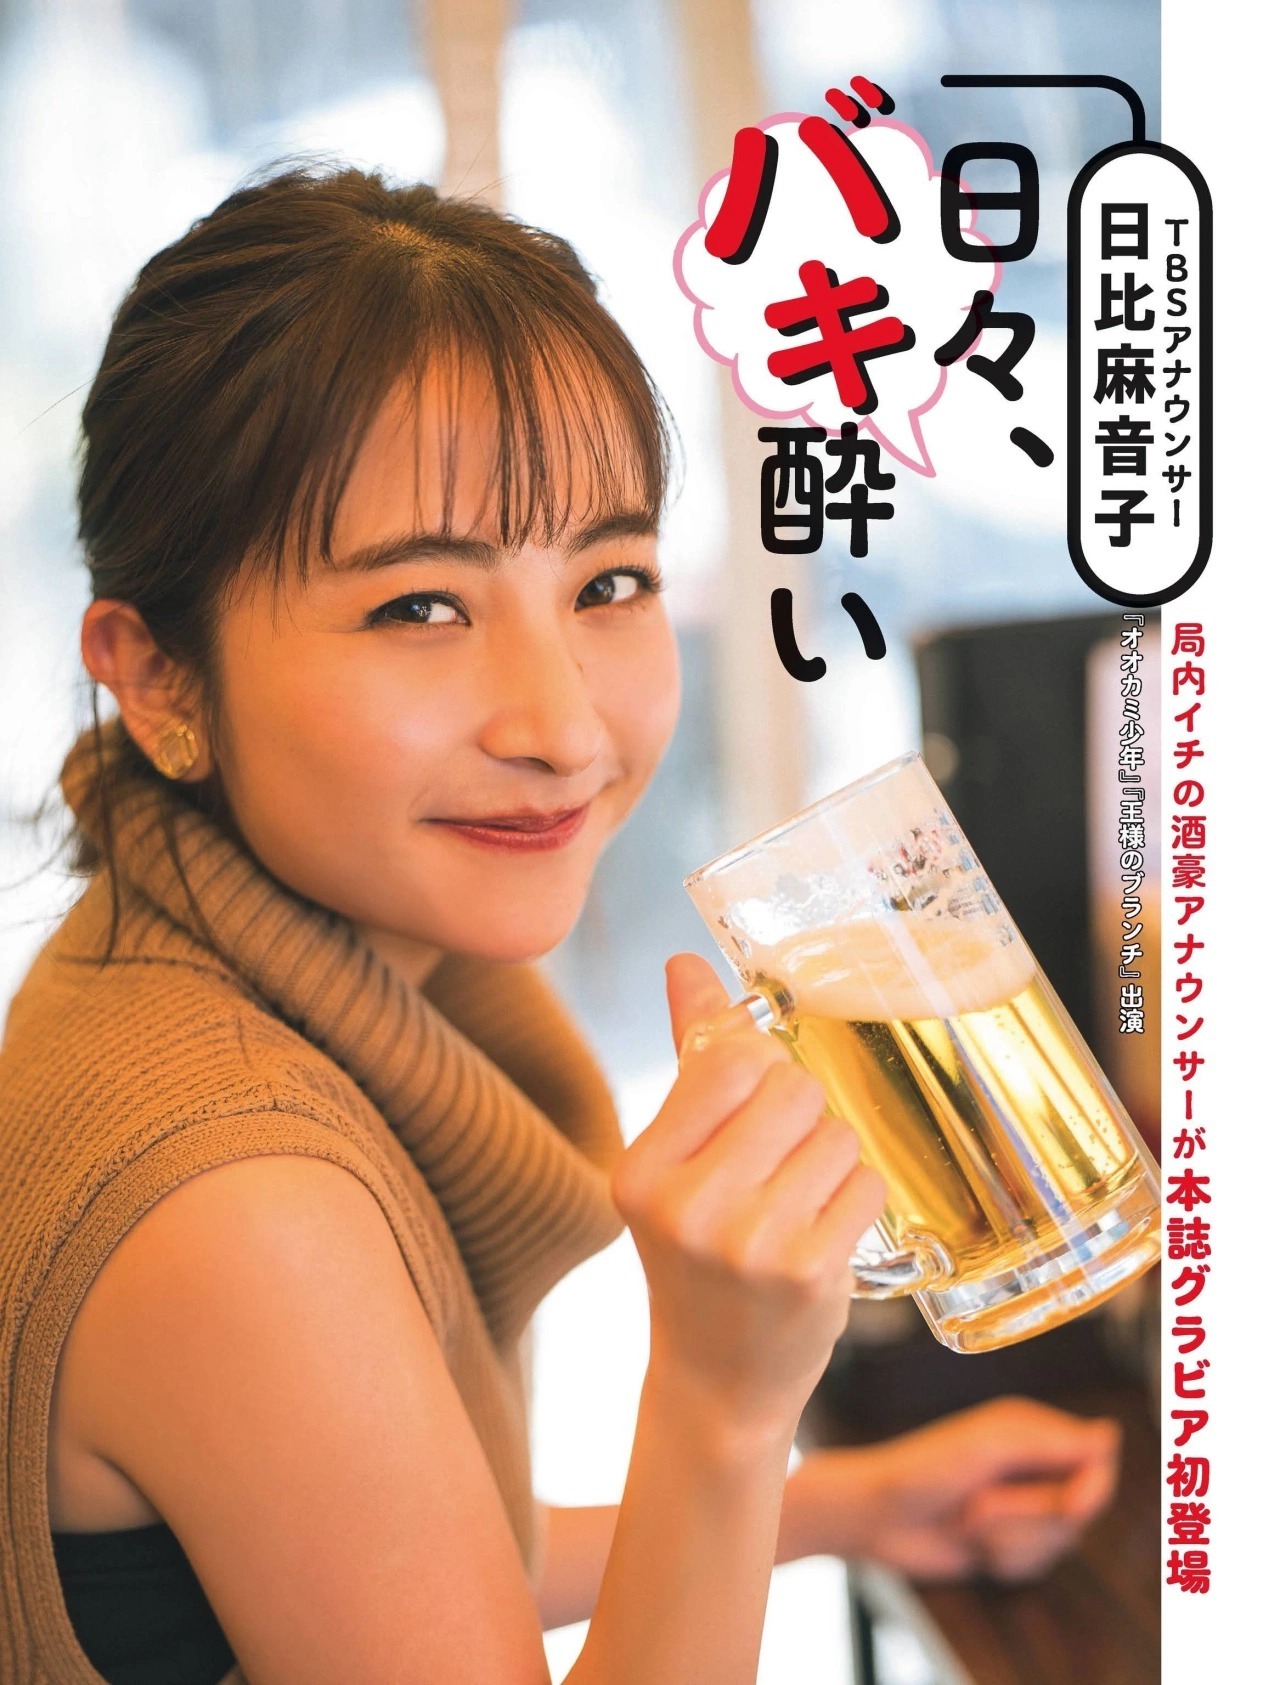 Maoko Hibi 日比麻音子, FLASH 2022.02.01 (フラッシュ 2022年2月1日号) - itotii